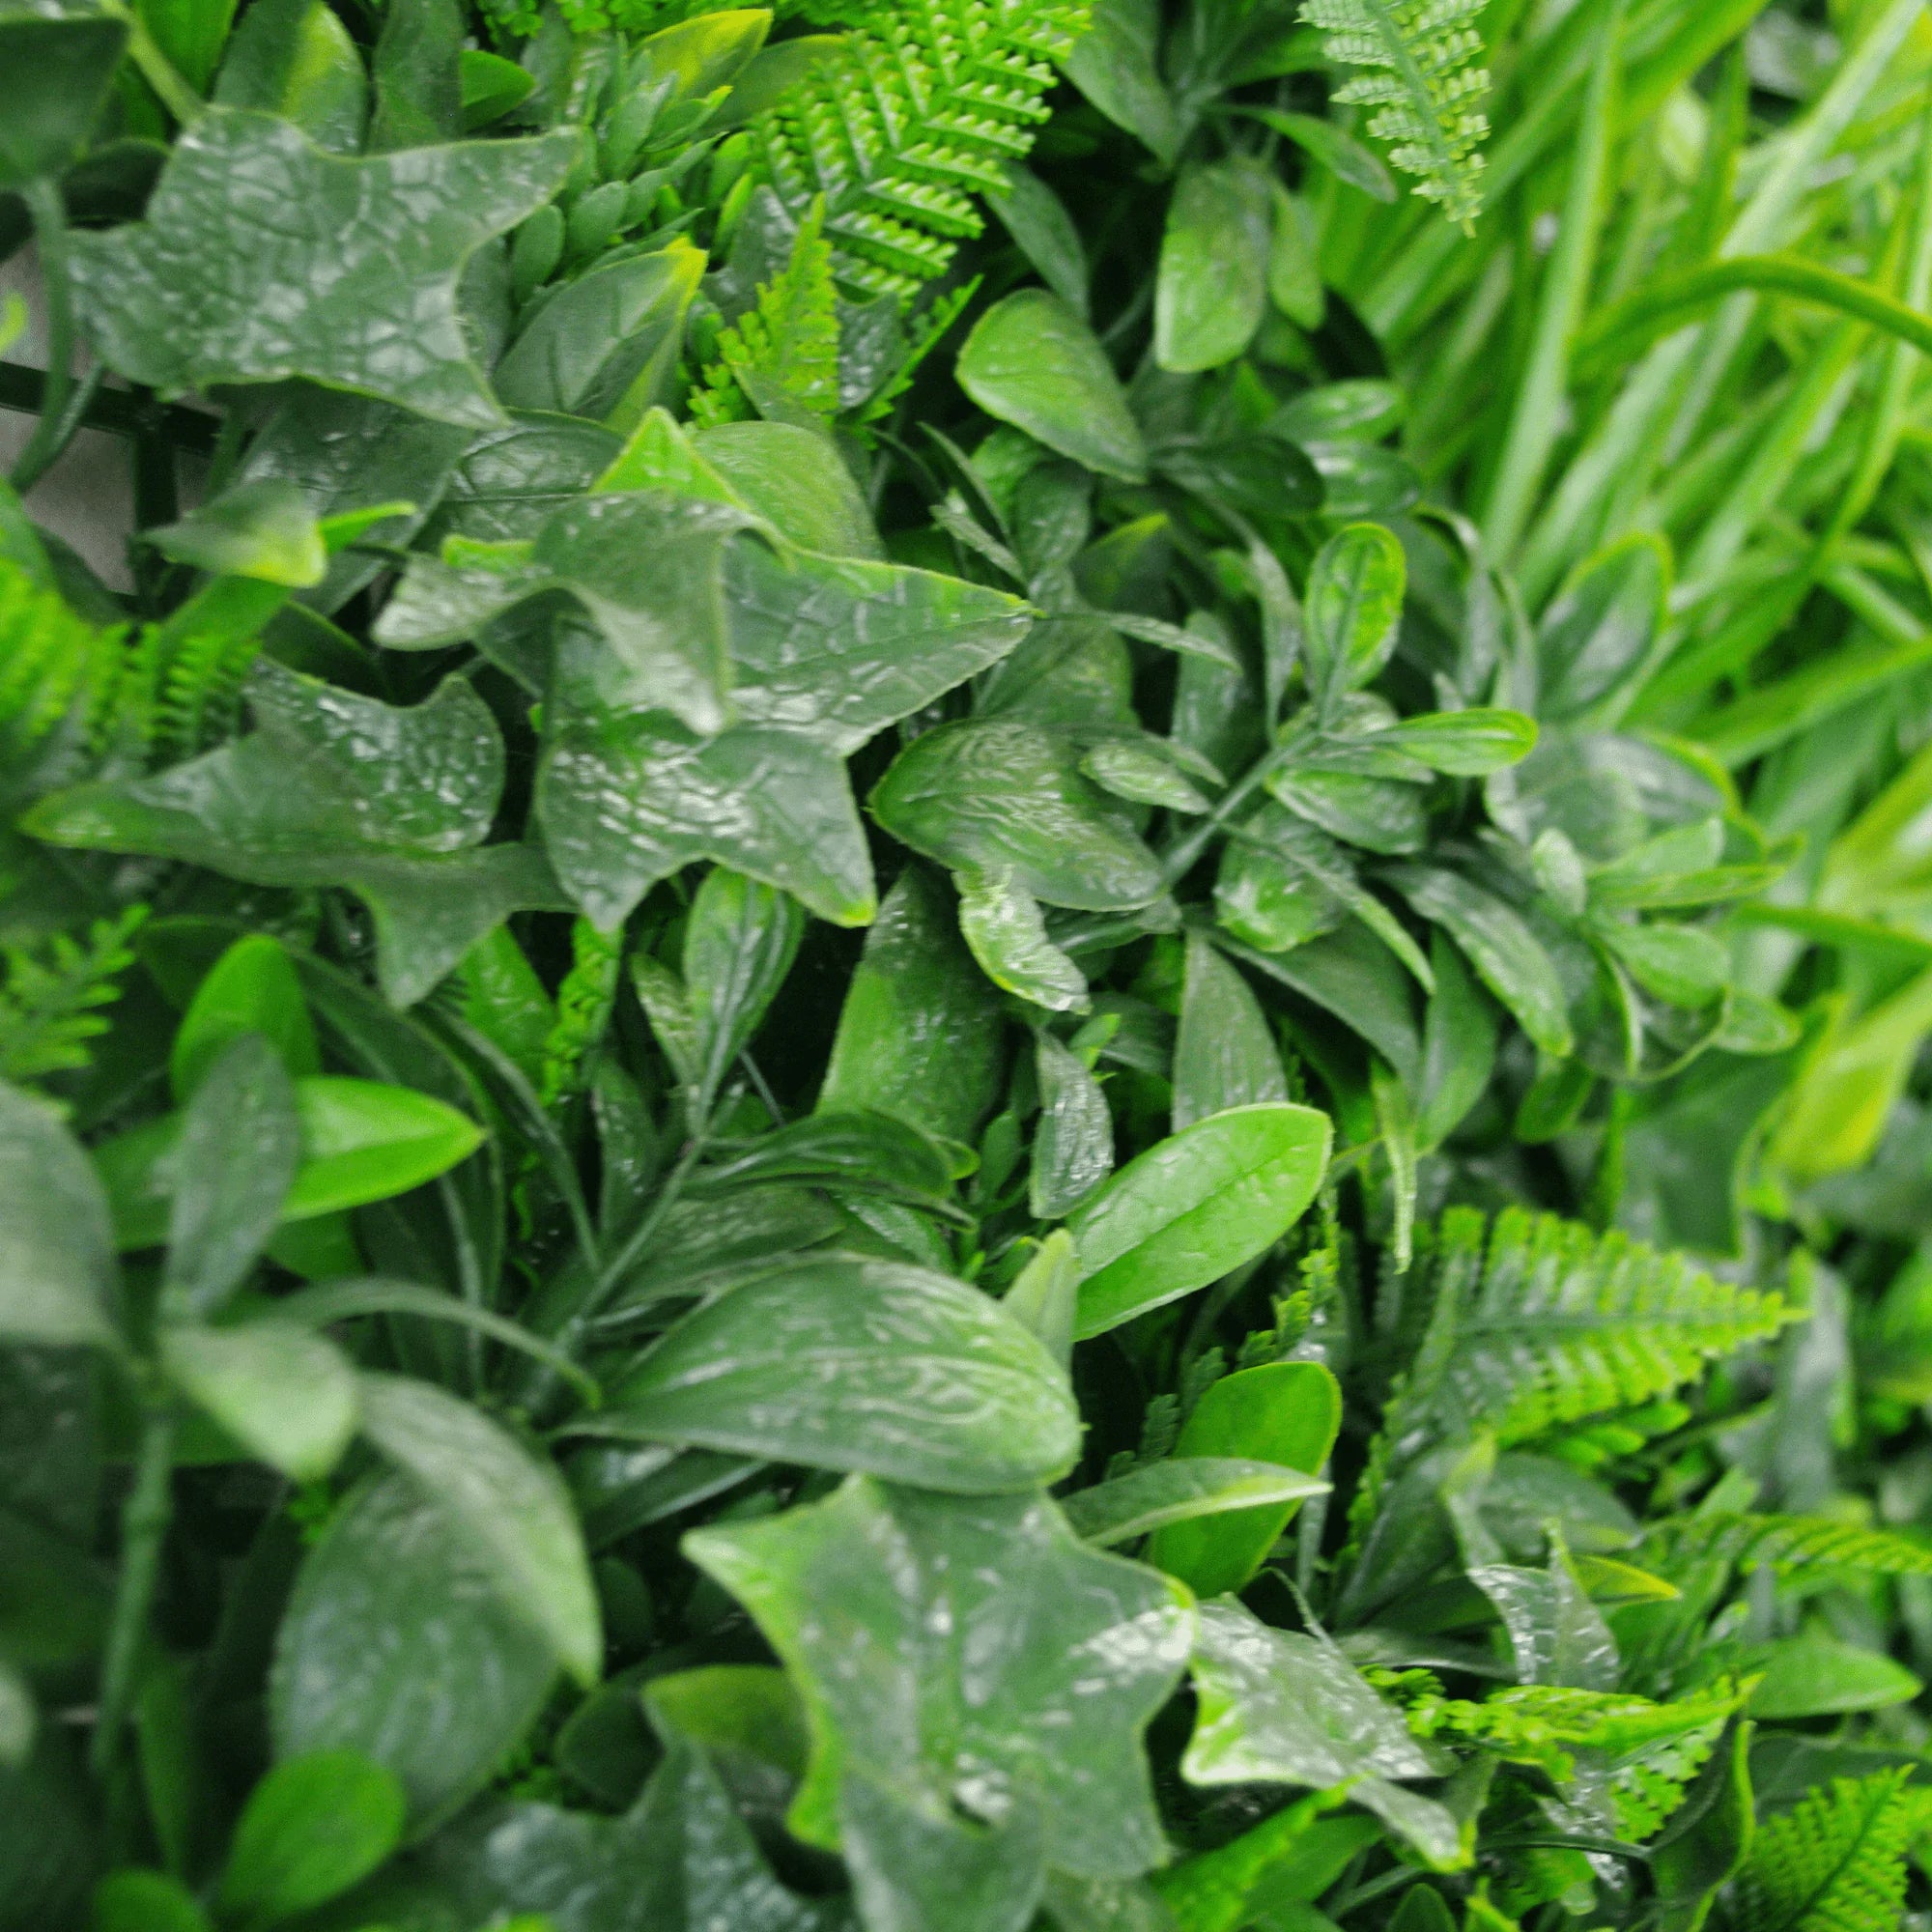 Green Tropics Artificial Green Wall 40